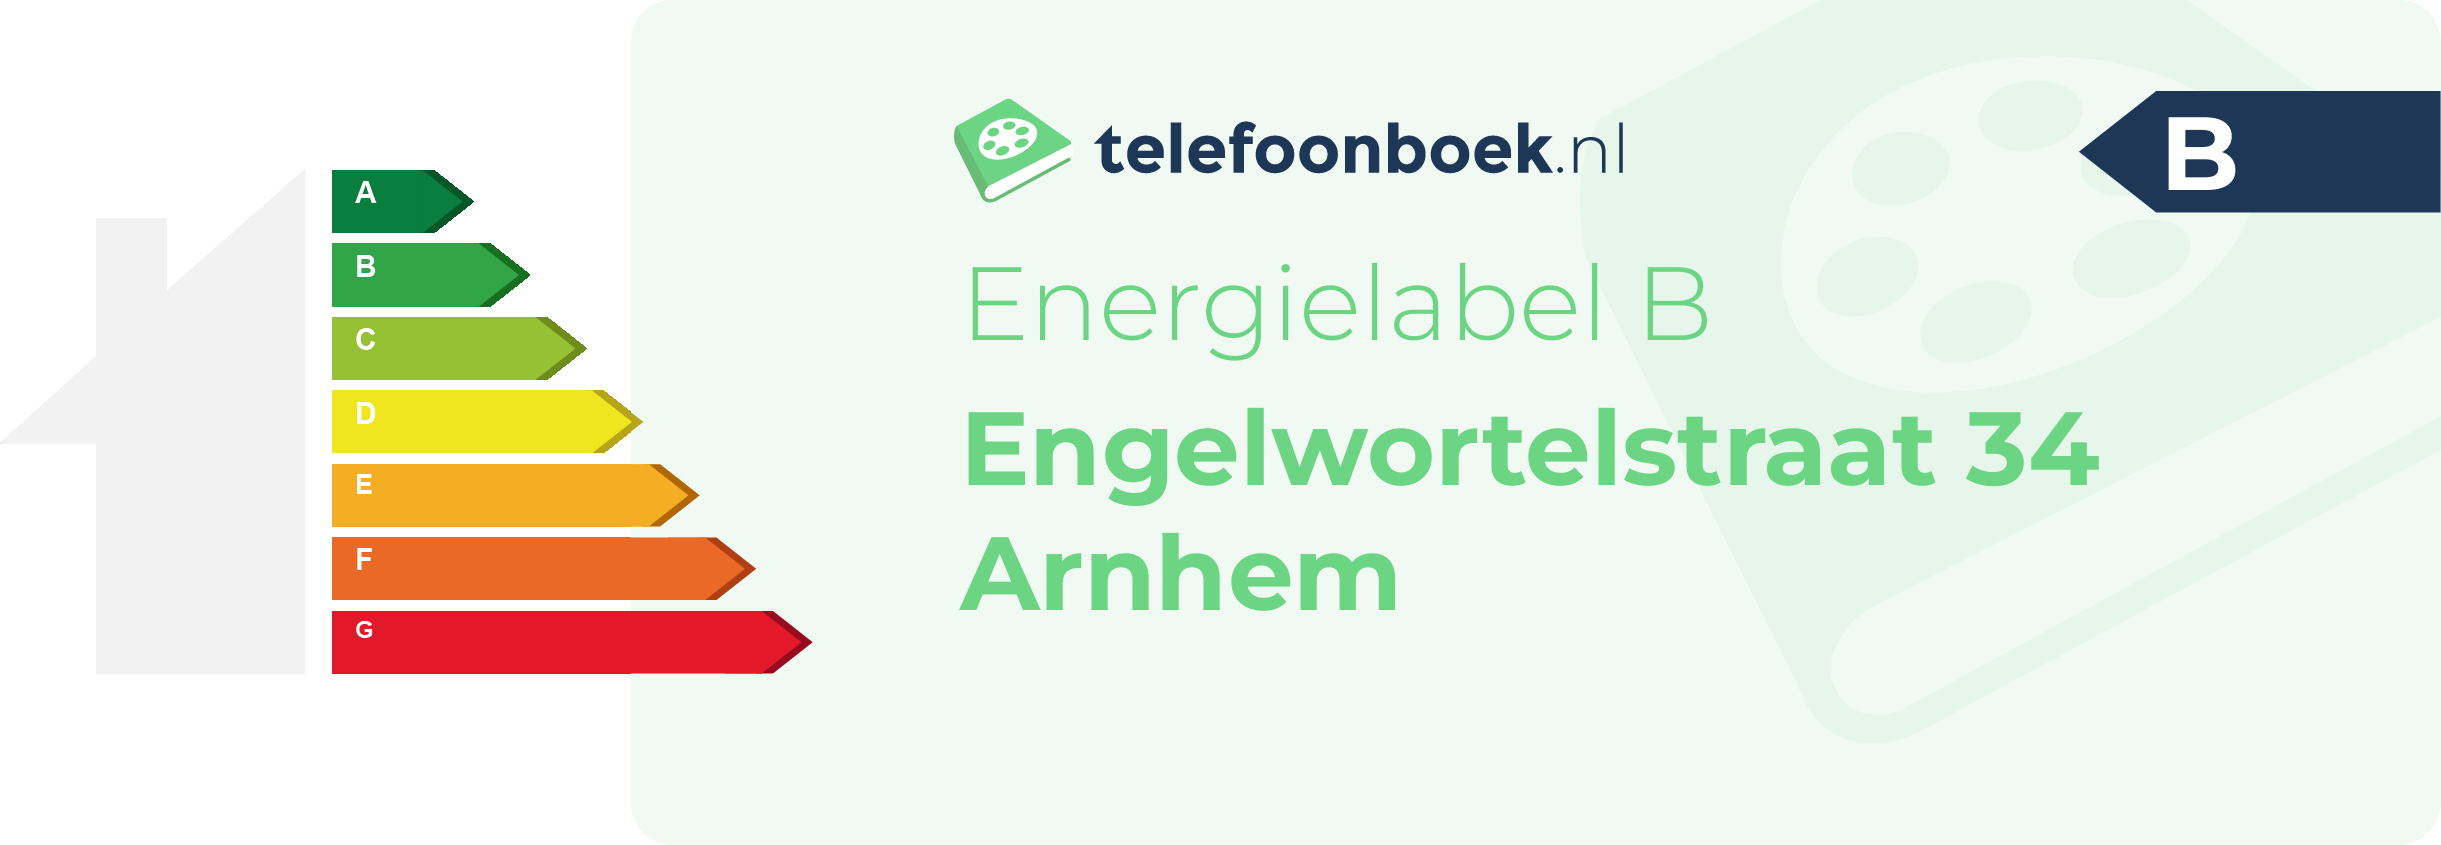 Energielabel Engelwortelstraat 34 Arnhem